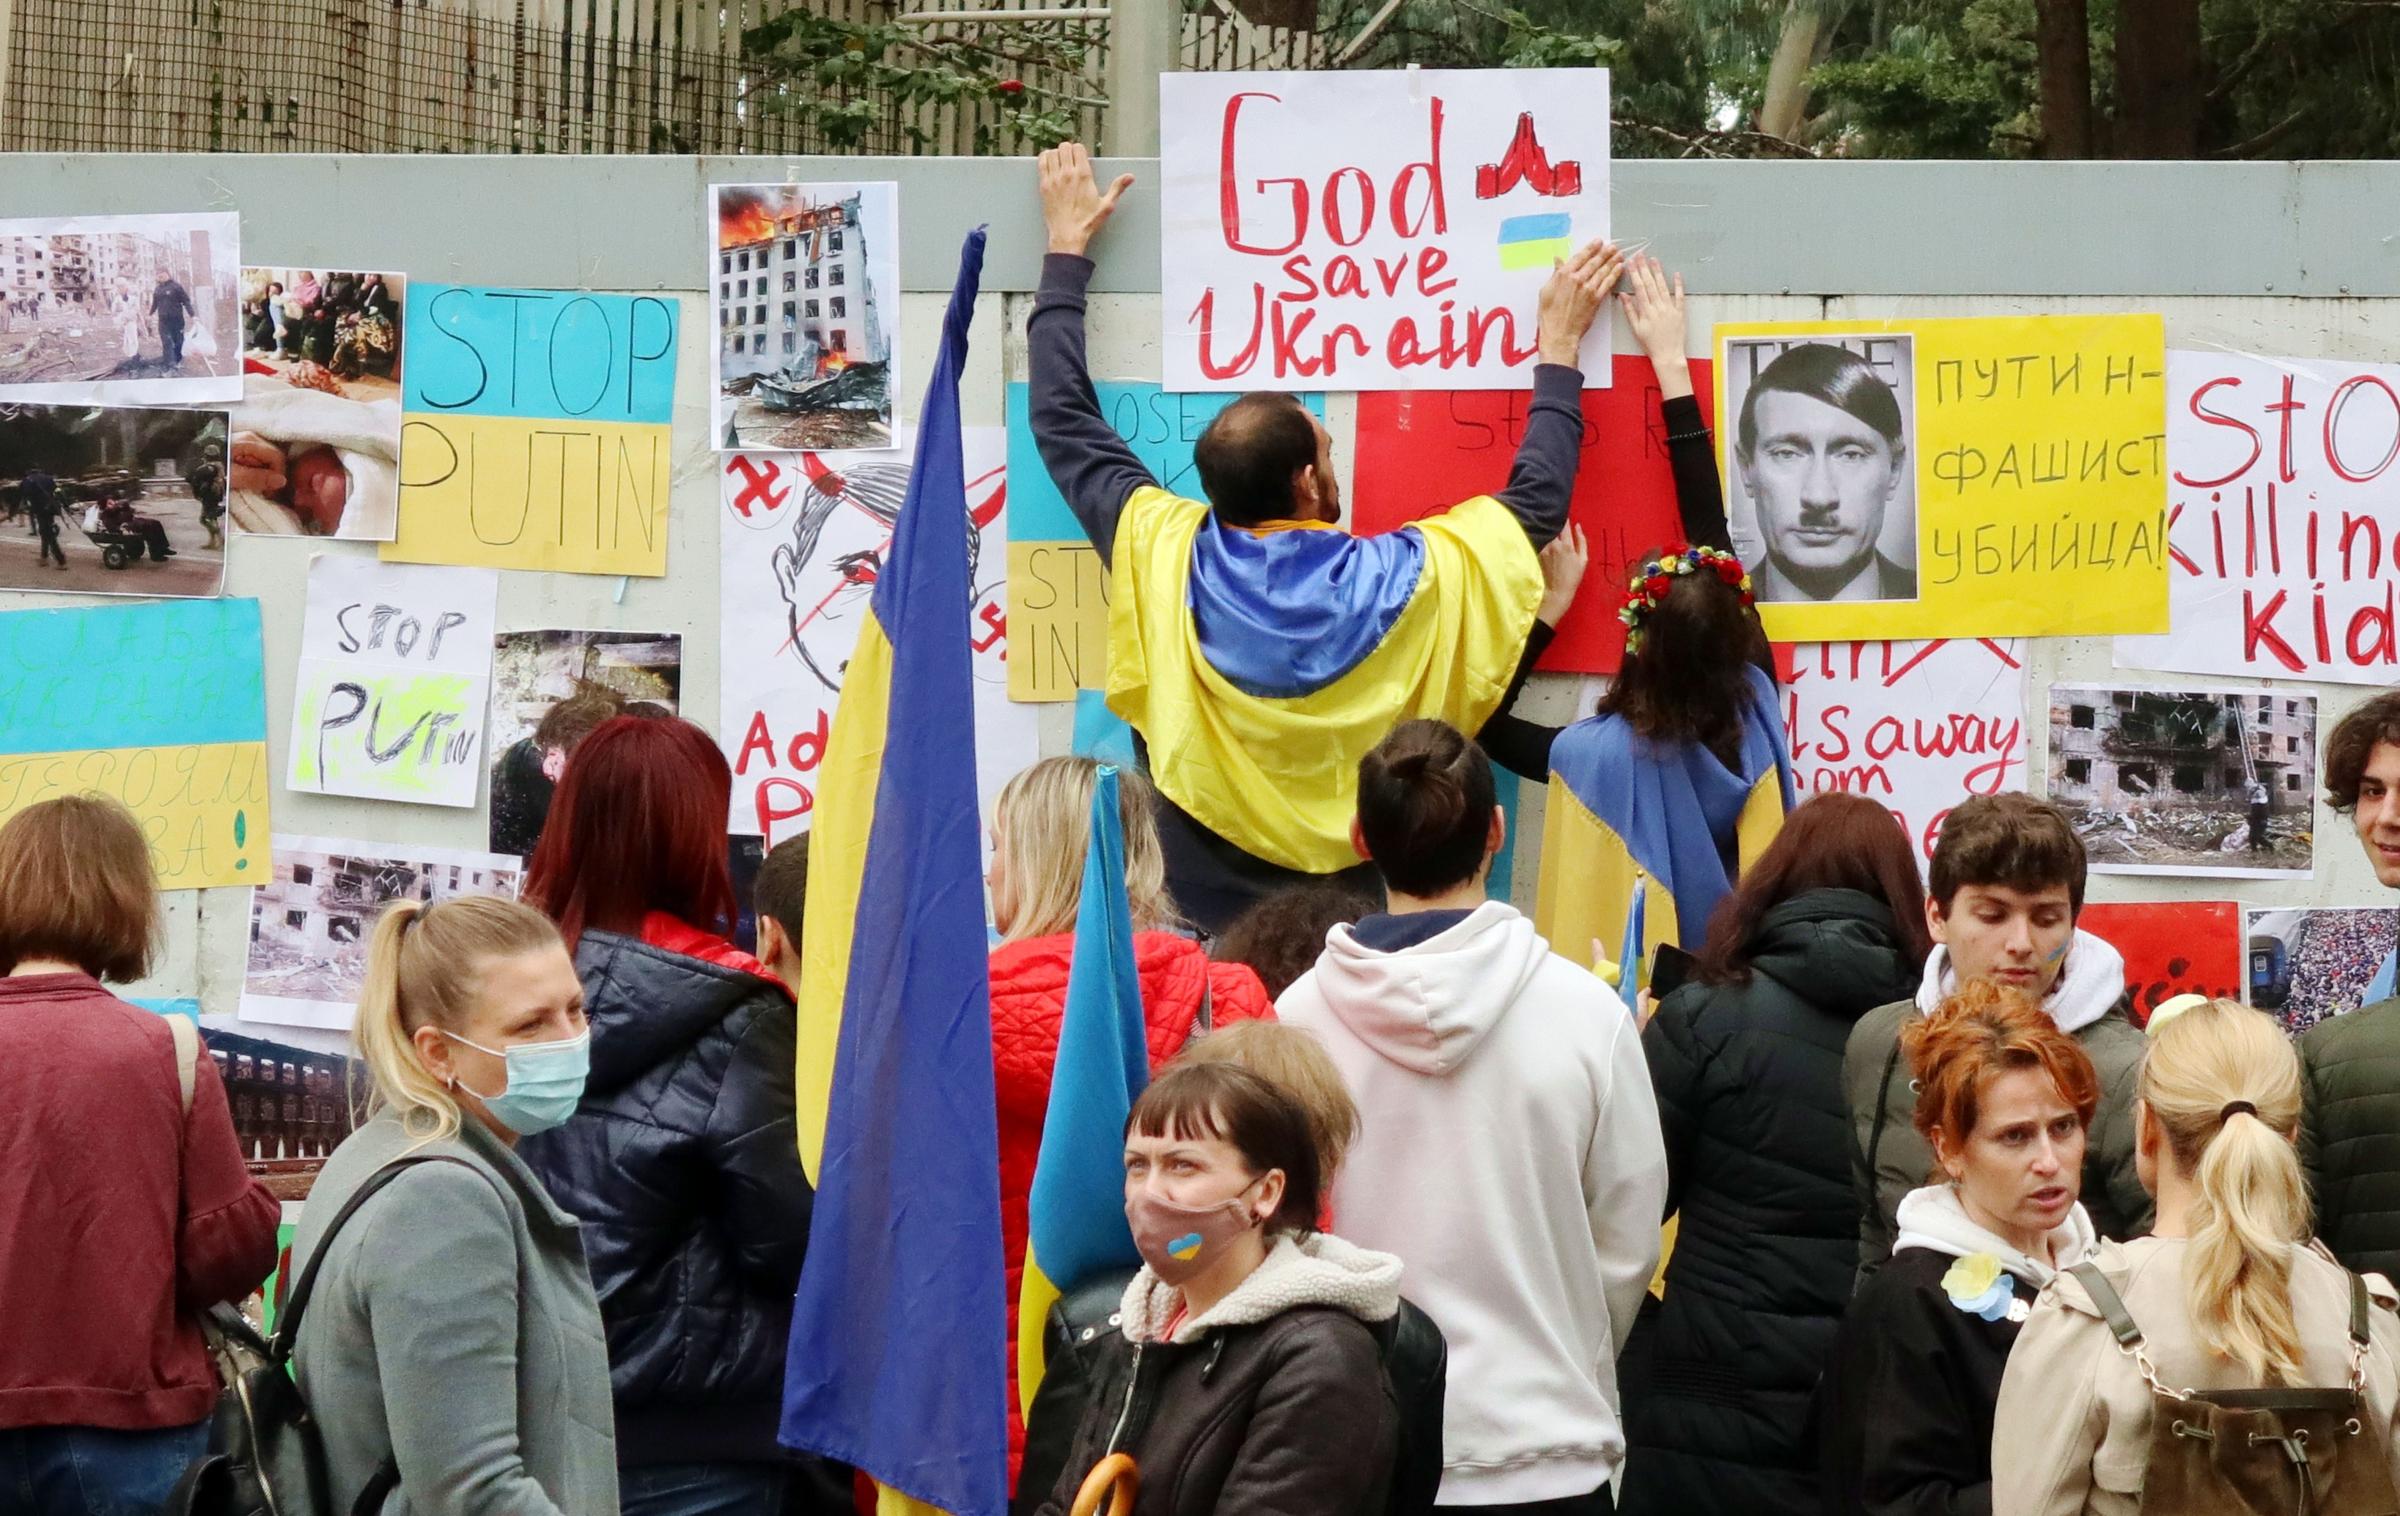 Libano - Lebanon - A shot of Ukrainian people's protest outside Russian...